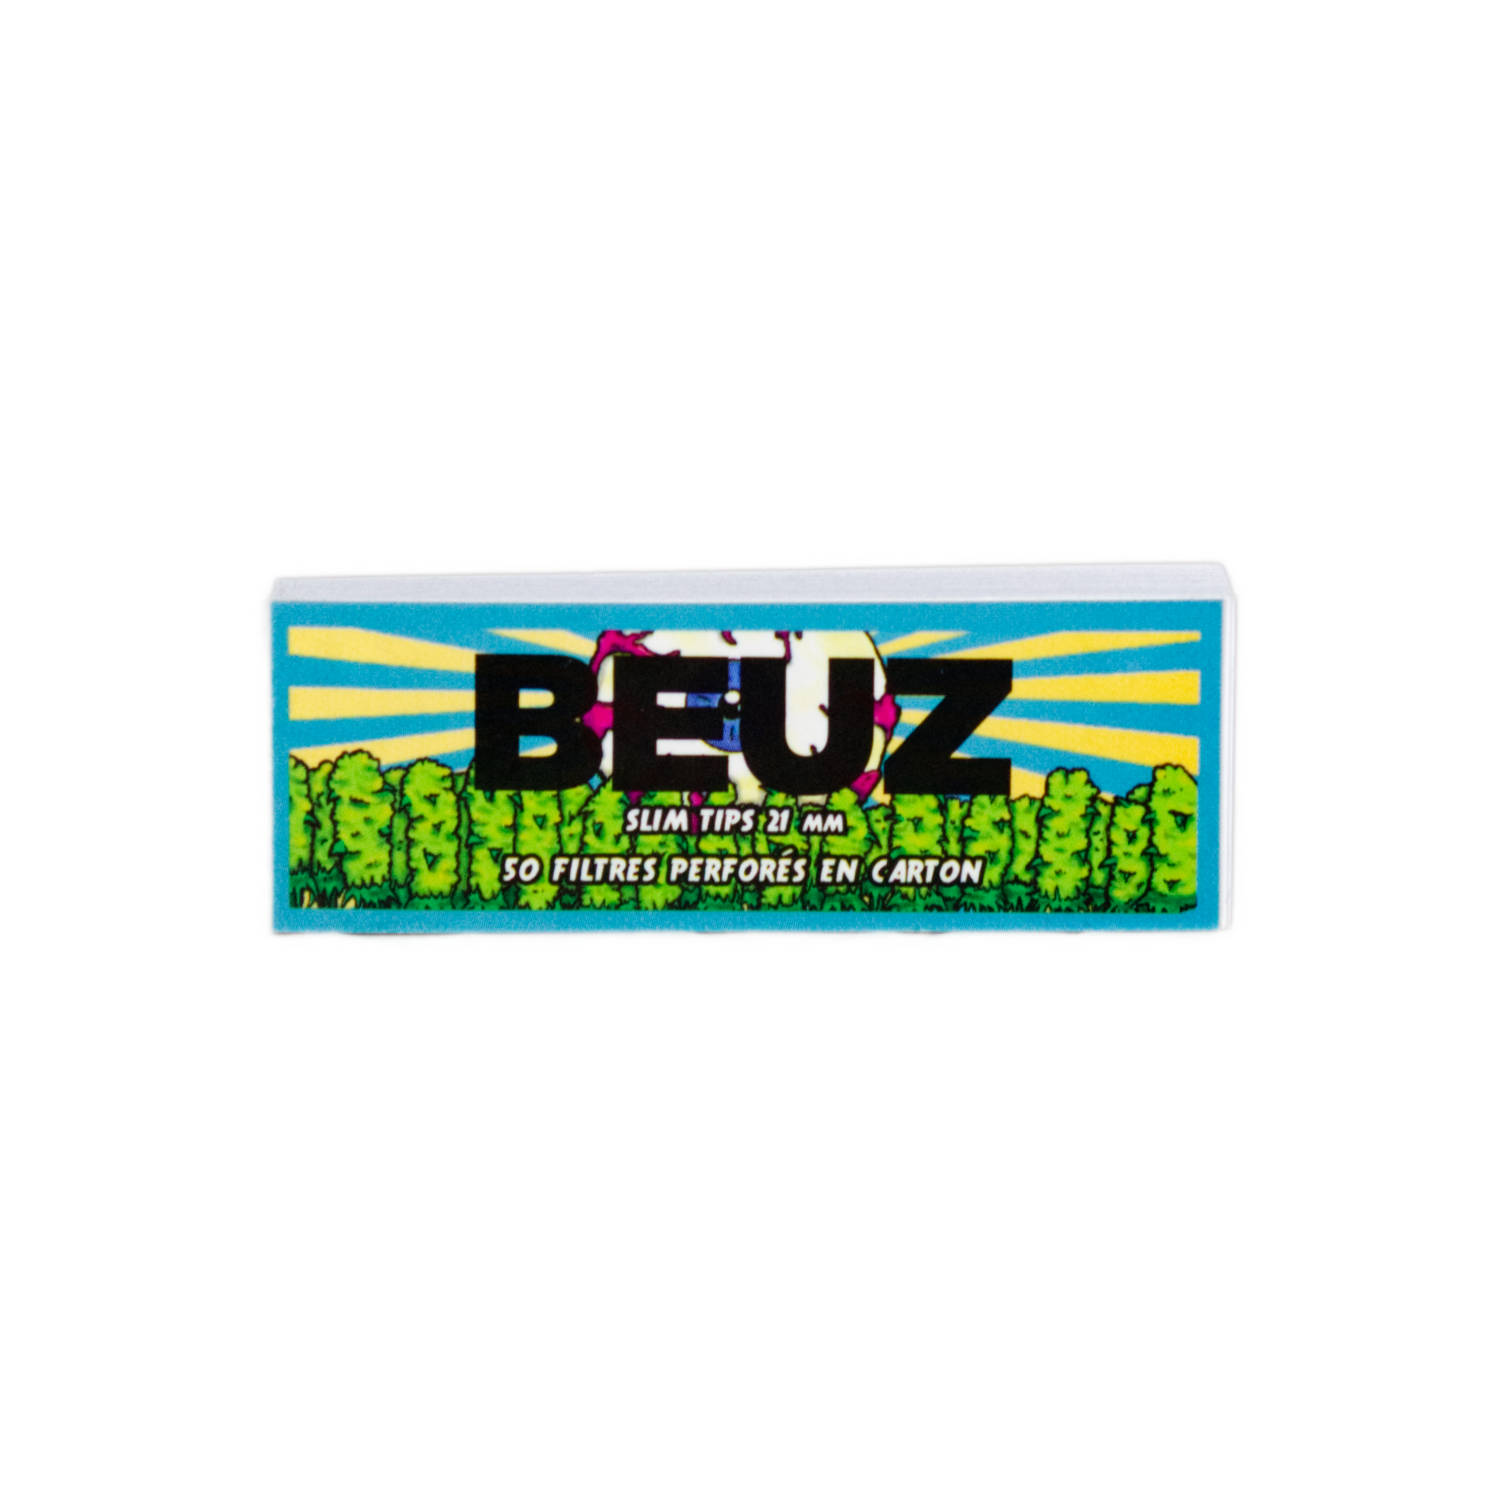 Filtres en carton “Beuz” Edition Spéciale perforés